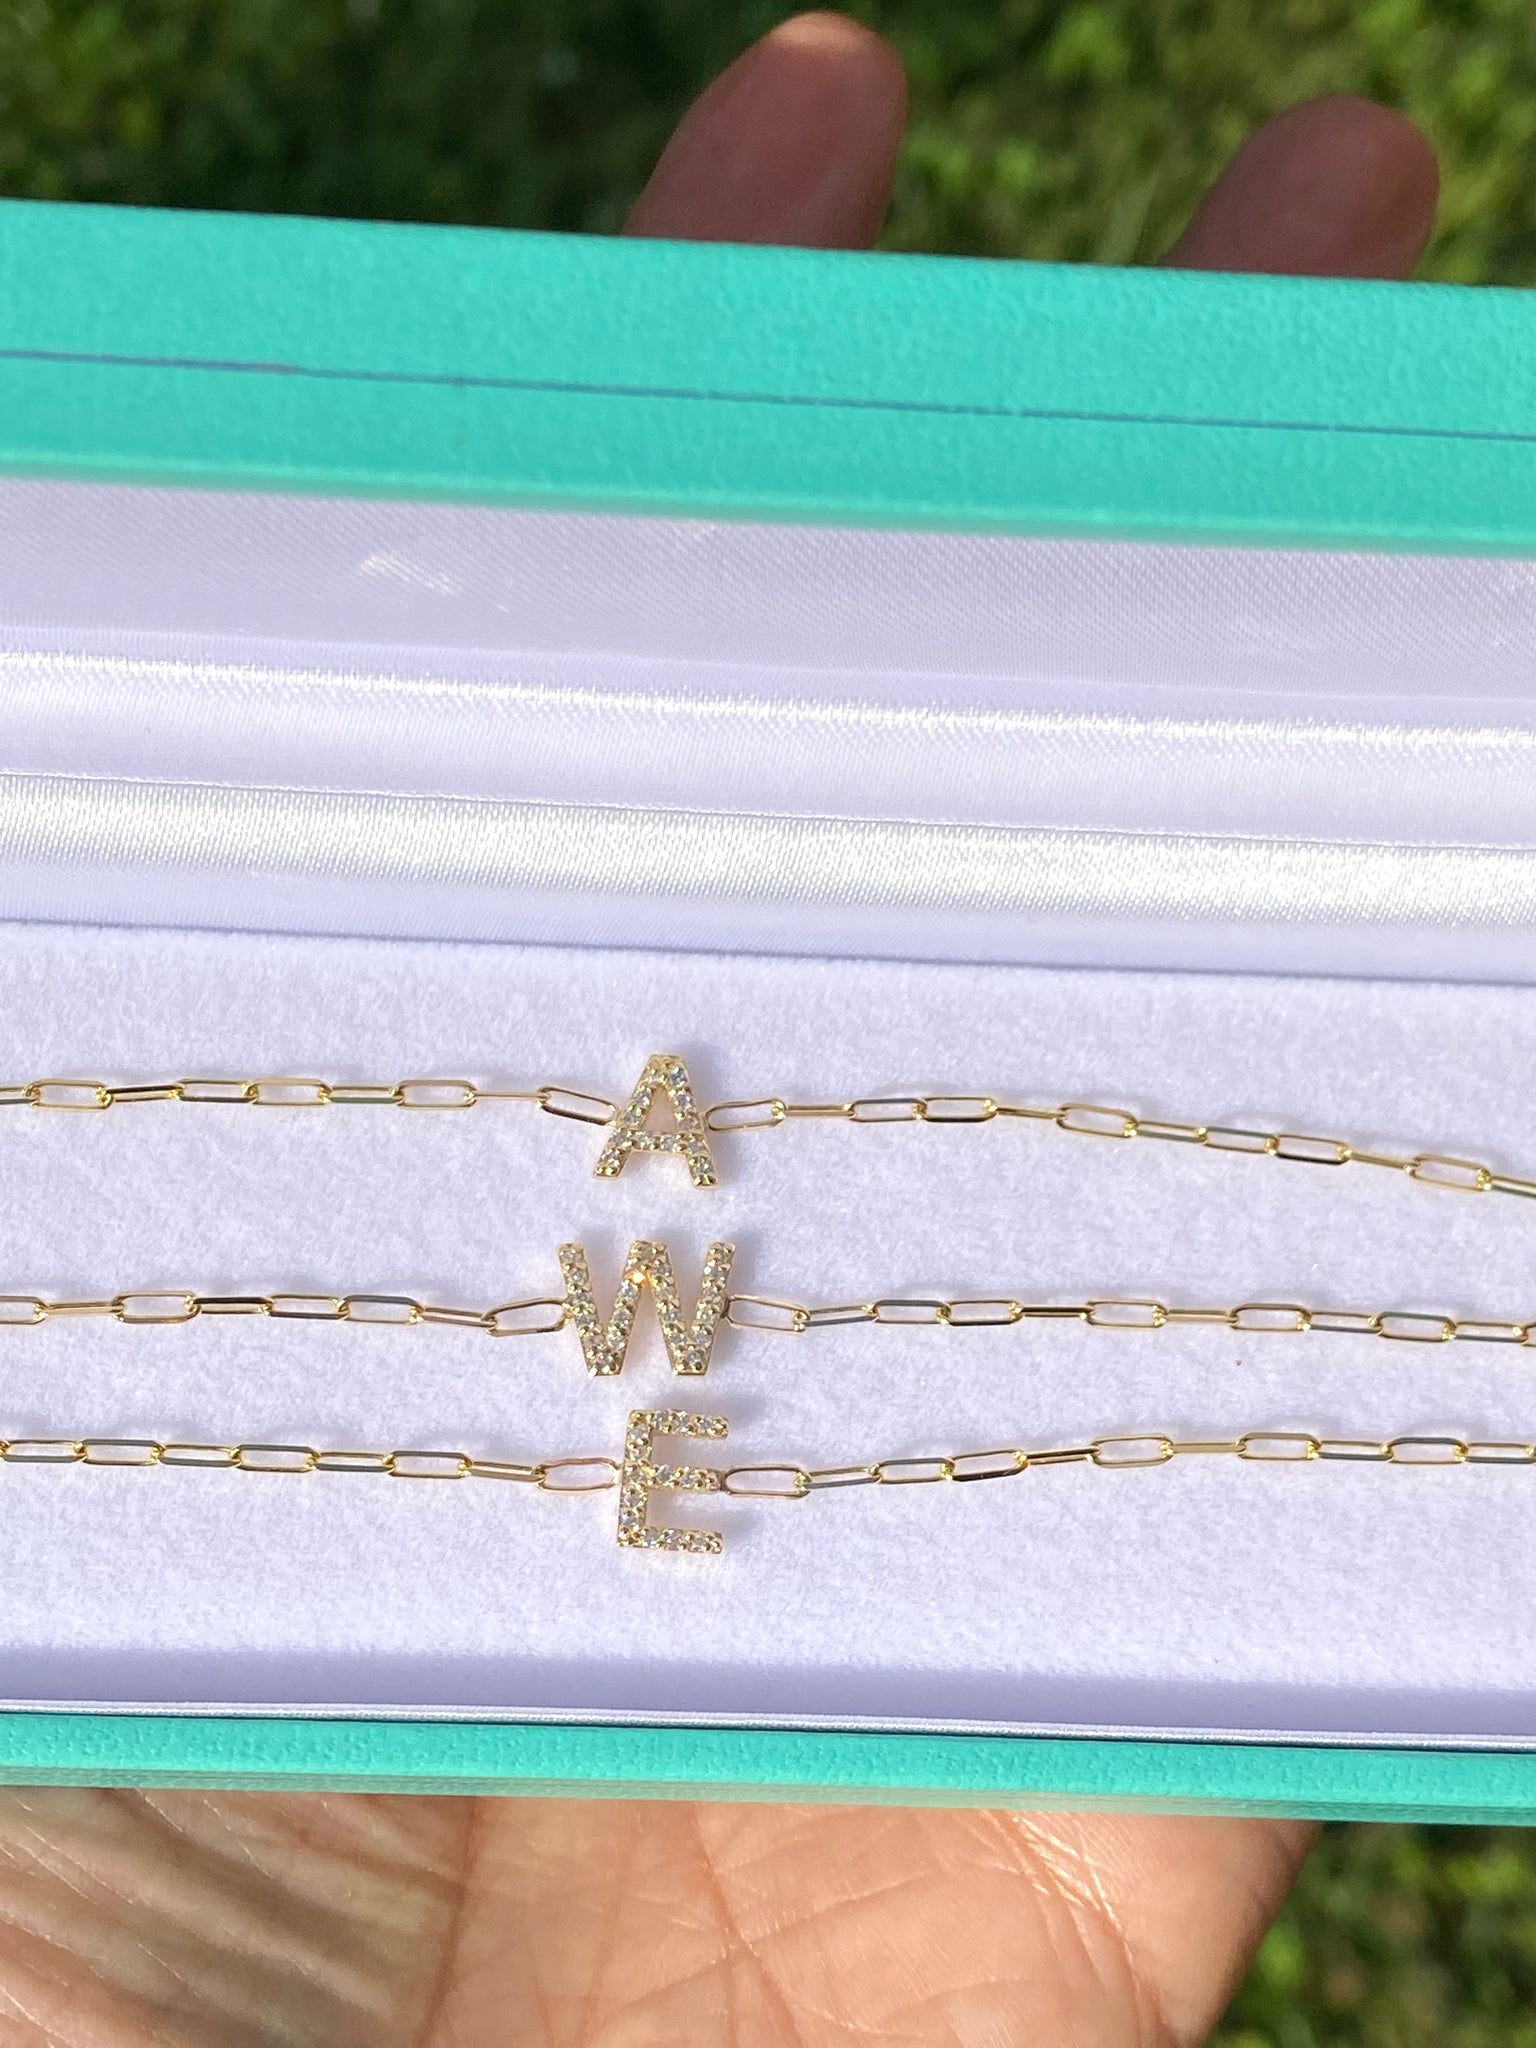 Tezza Paperclip Chain Bracelet w/ Diamond Initial Charm